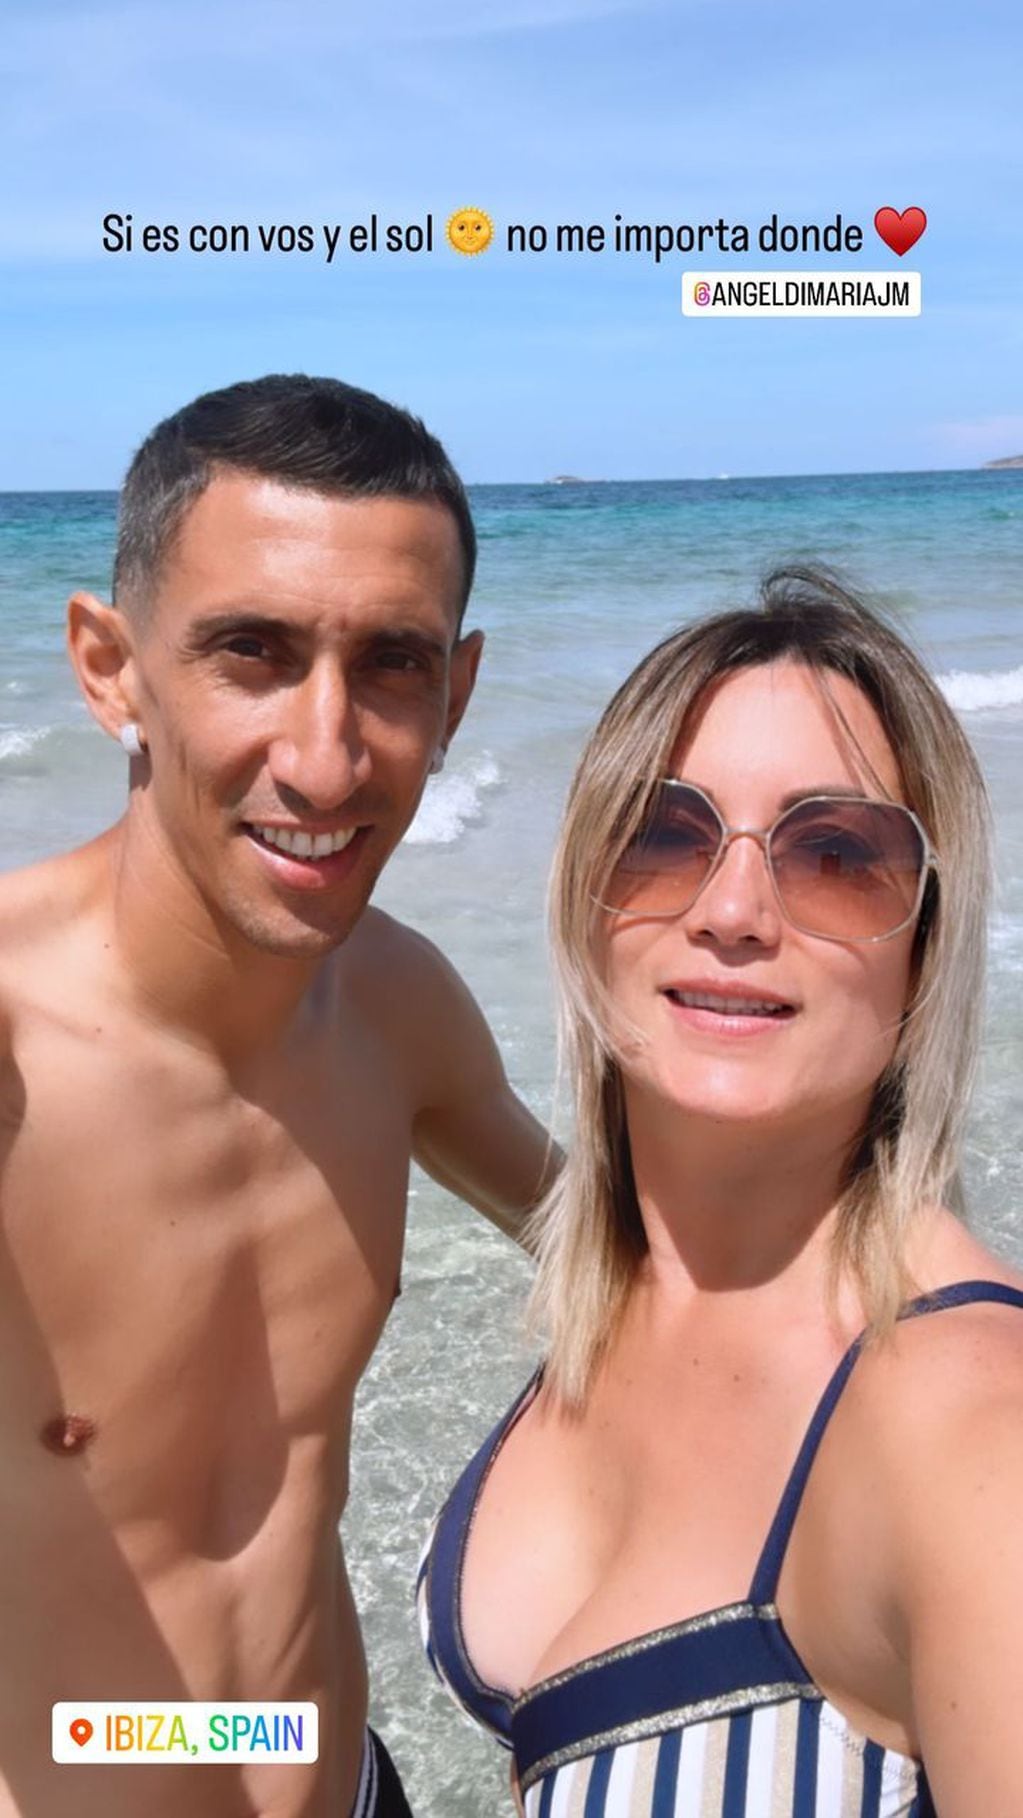 La esposa del futbolista publicó una selfie con vista al mar.